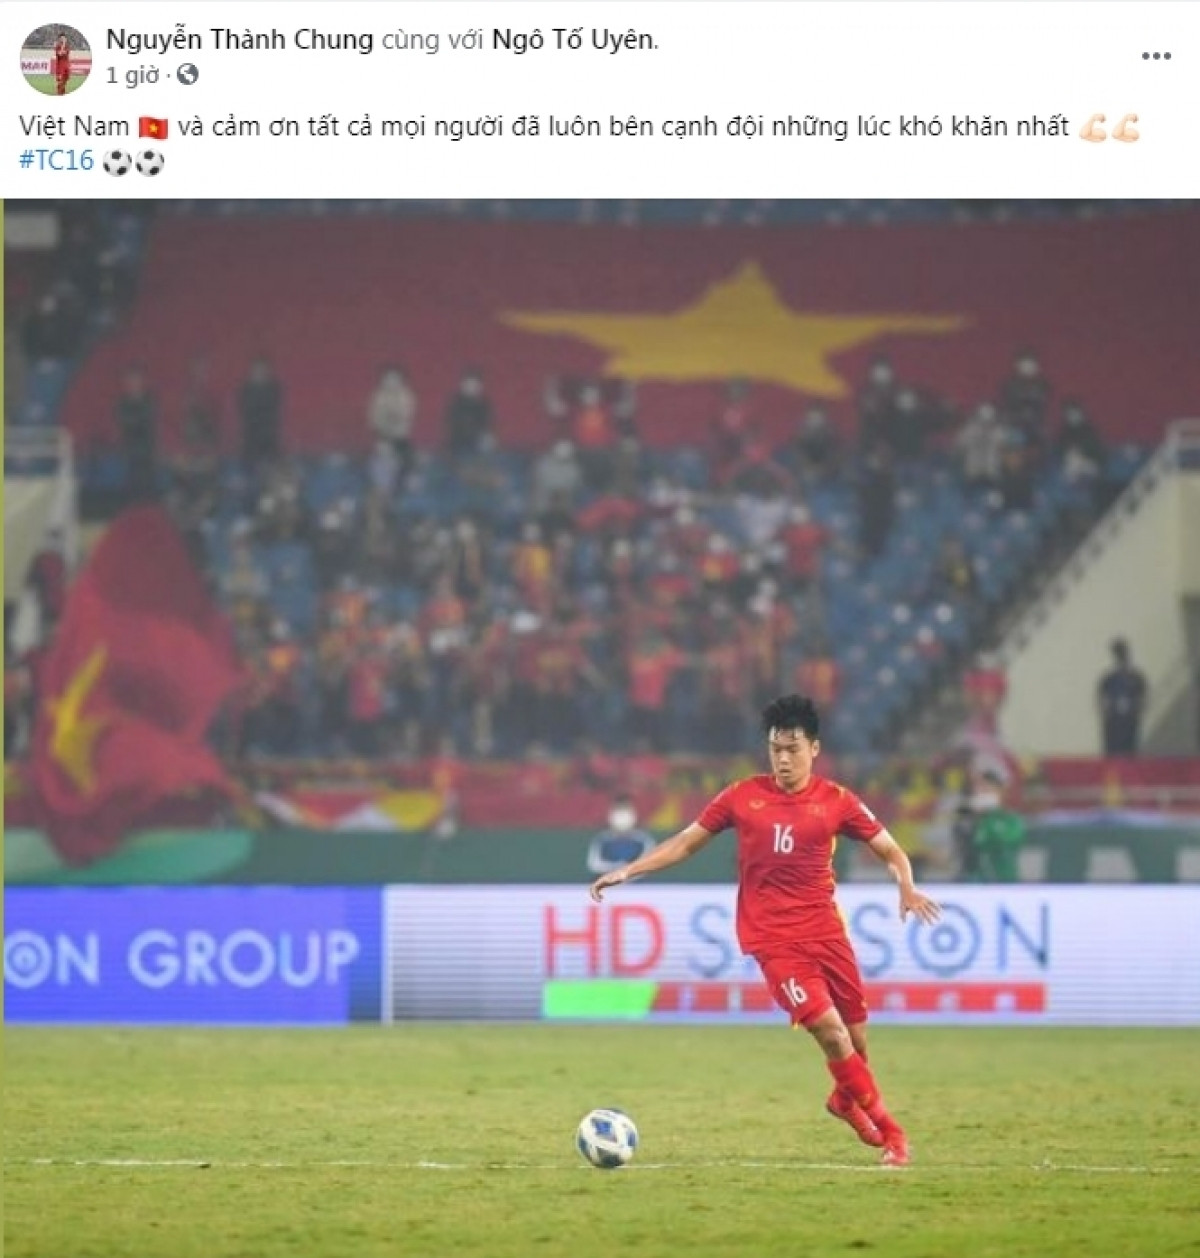 Thành Chung gửi lời cảm ơn người hâm mộ sau thất bại 0-1 trước Saudi Arabia.